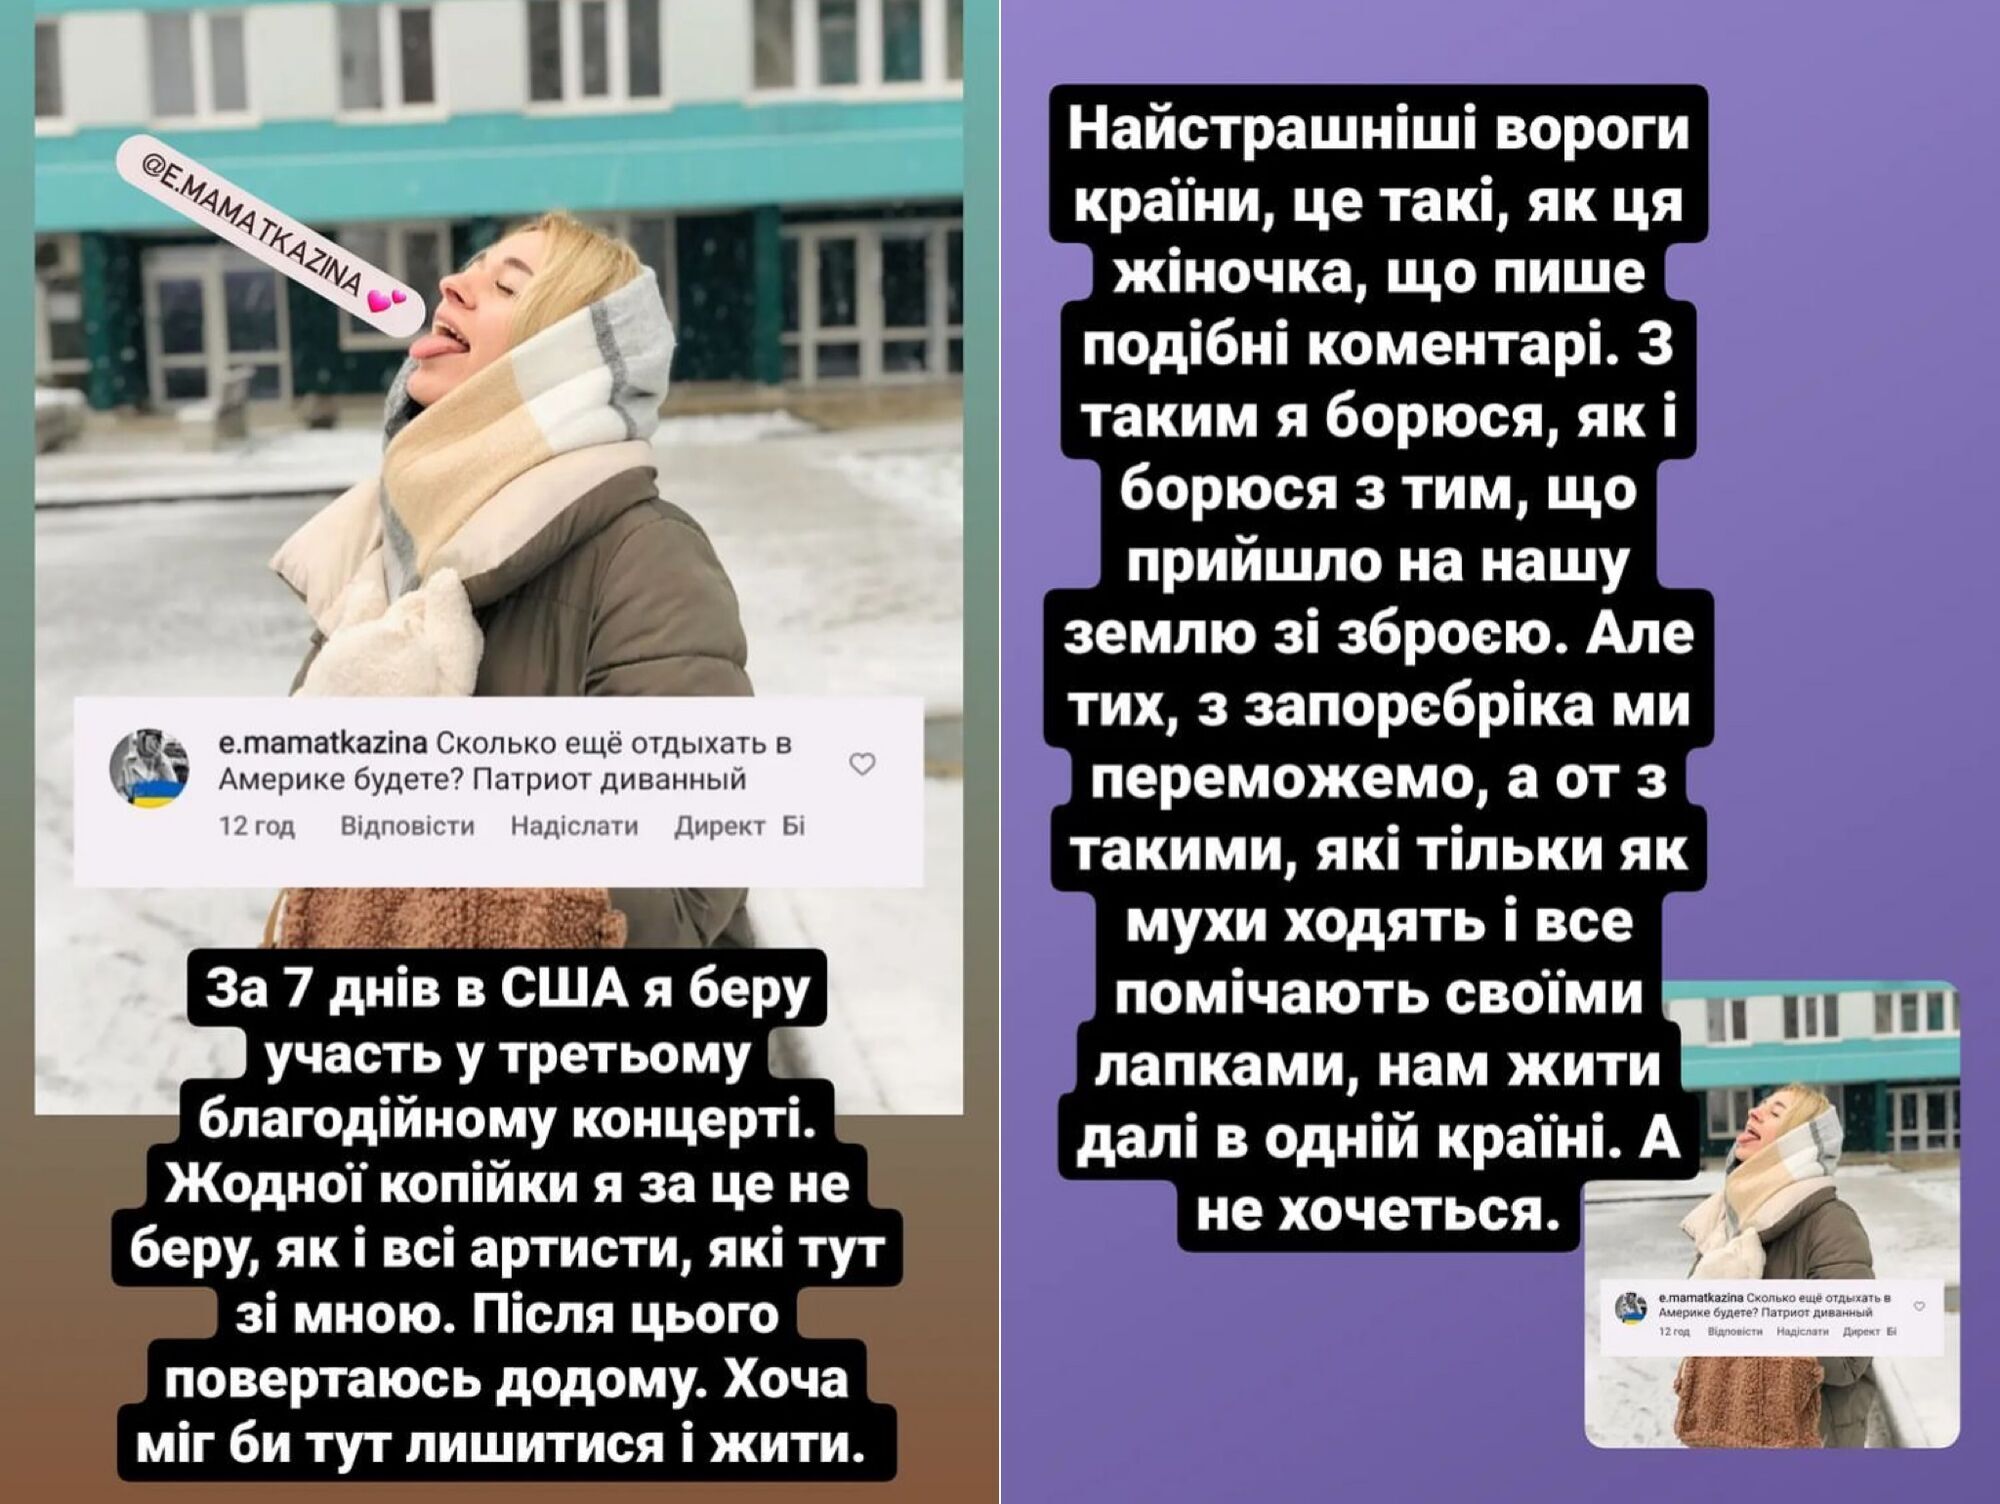 "Ми не заробили ні копійки": Анатоліч з-за кордону поставив на місце українку і спростував міф про зірок, які "зажралися"